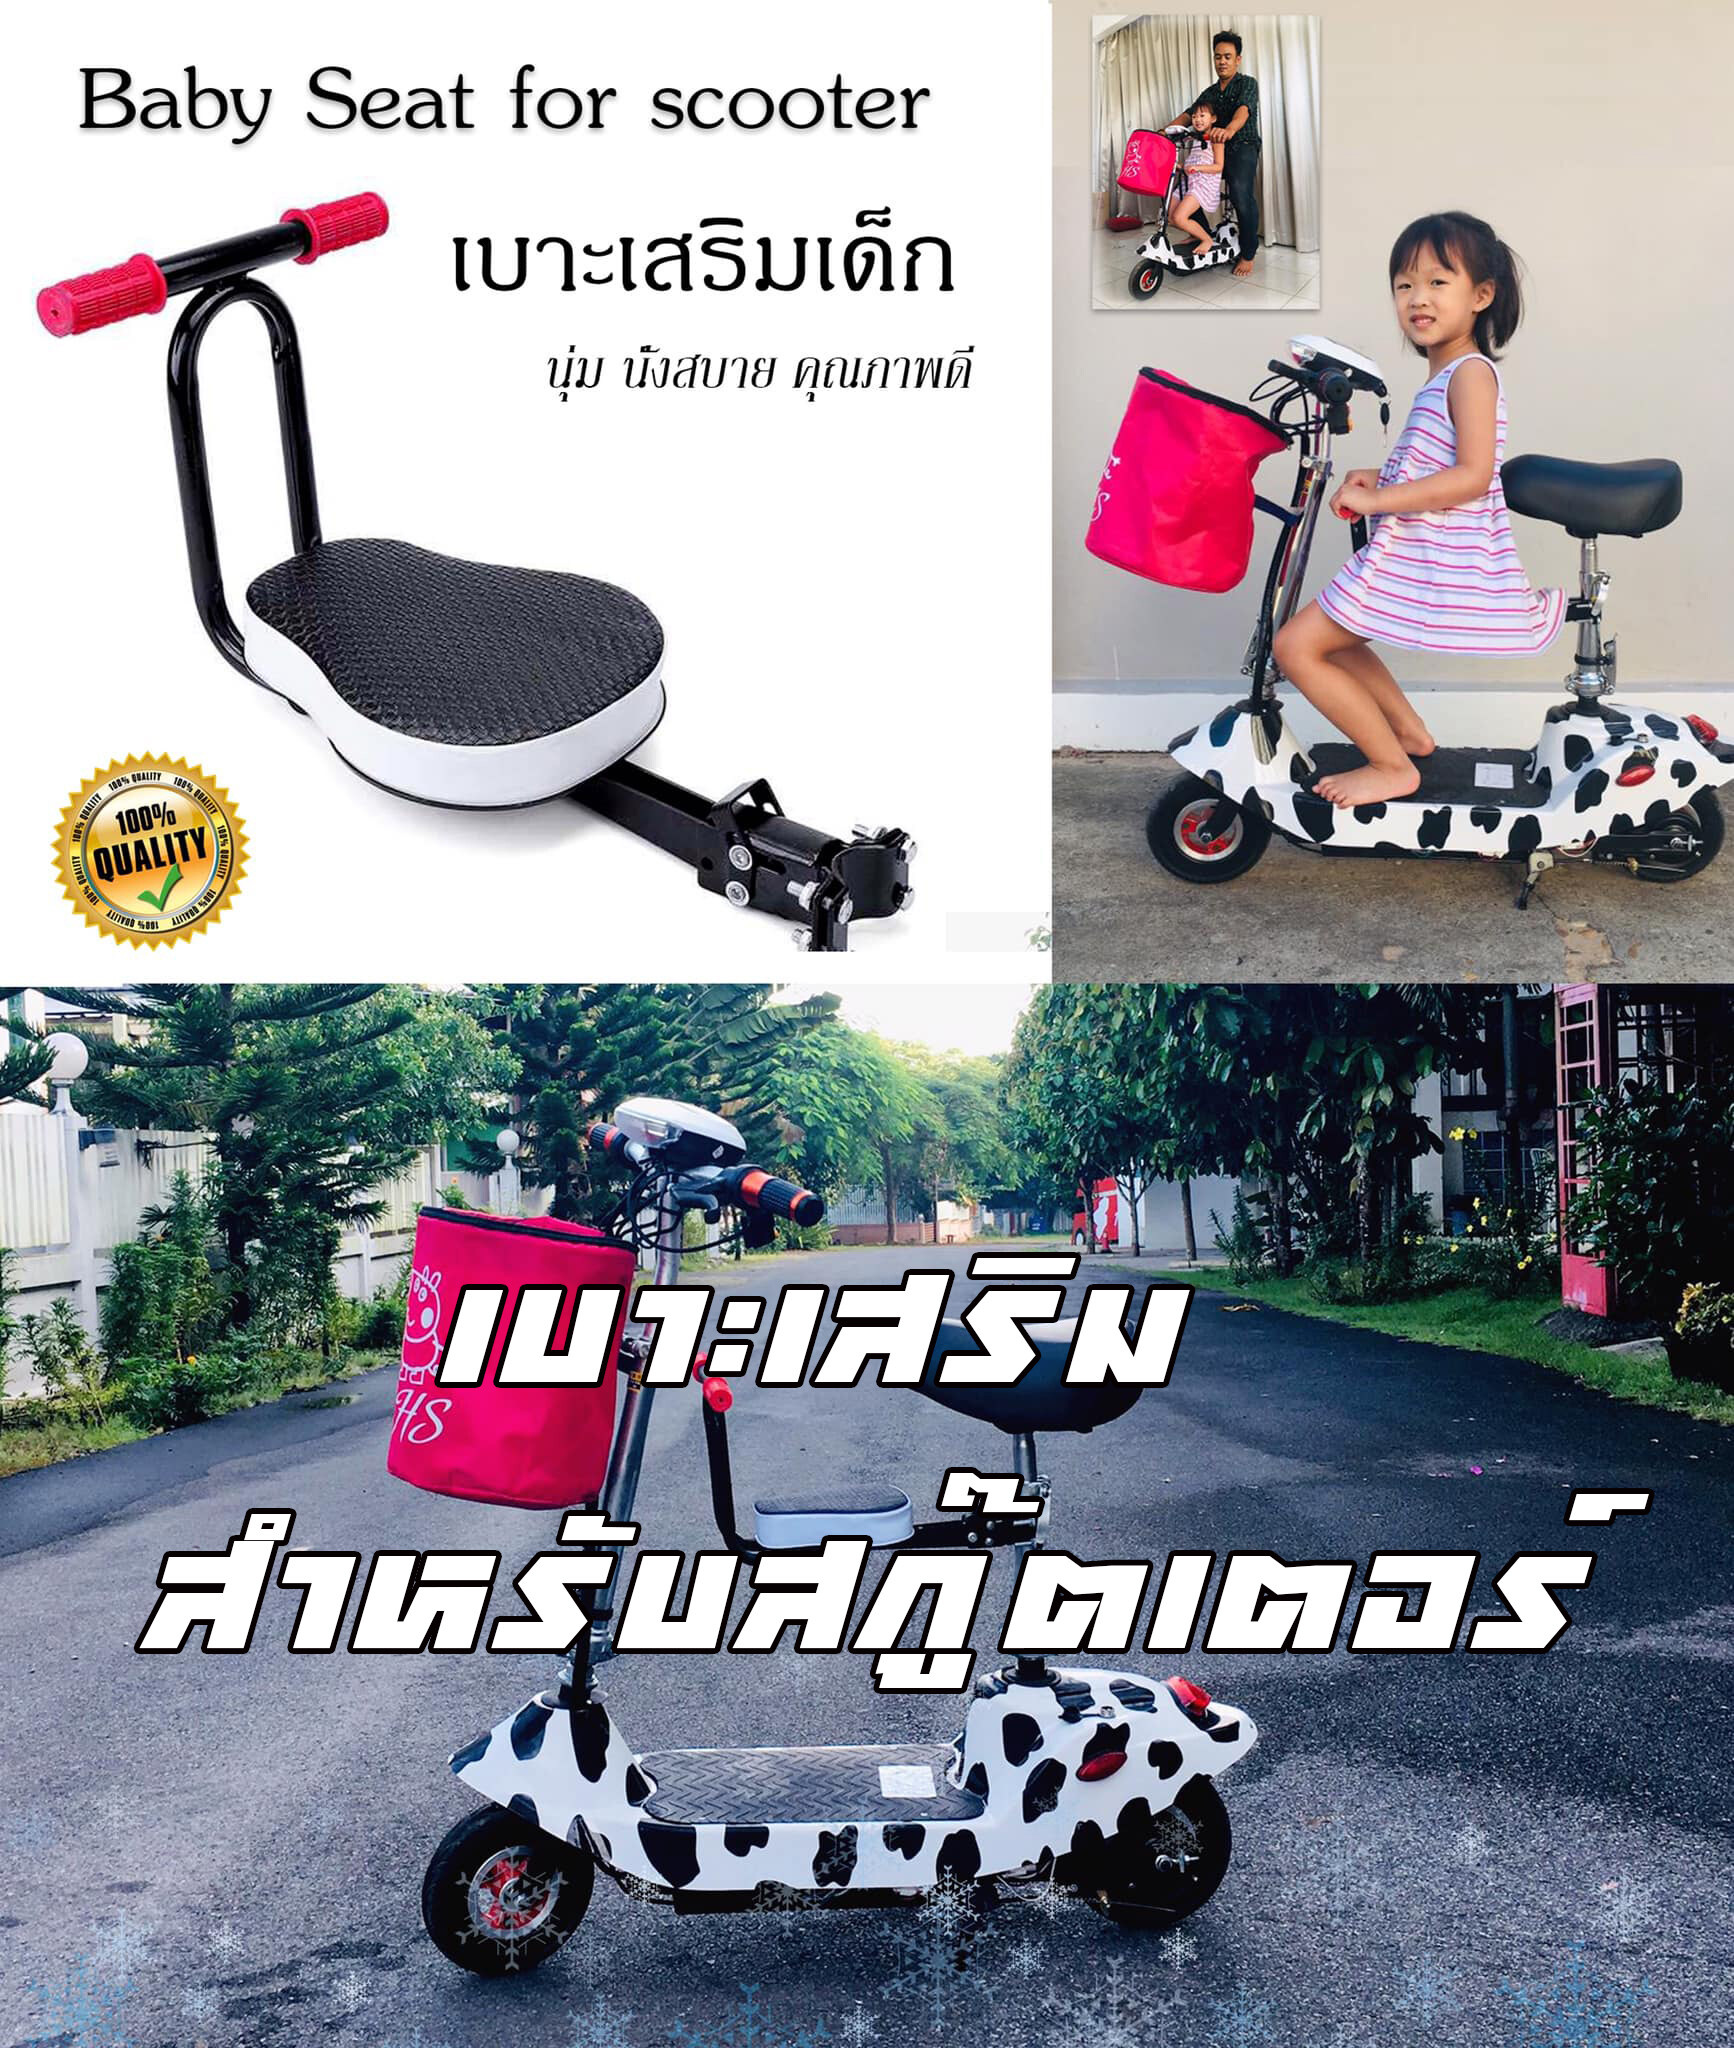 พร้อมส่งไทย เบาะเสริมสกู๊ตเตอร์ไฟฟ้าสำหรับเด็ก  Baby seat for Scooter